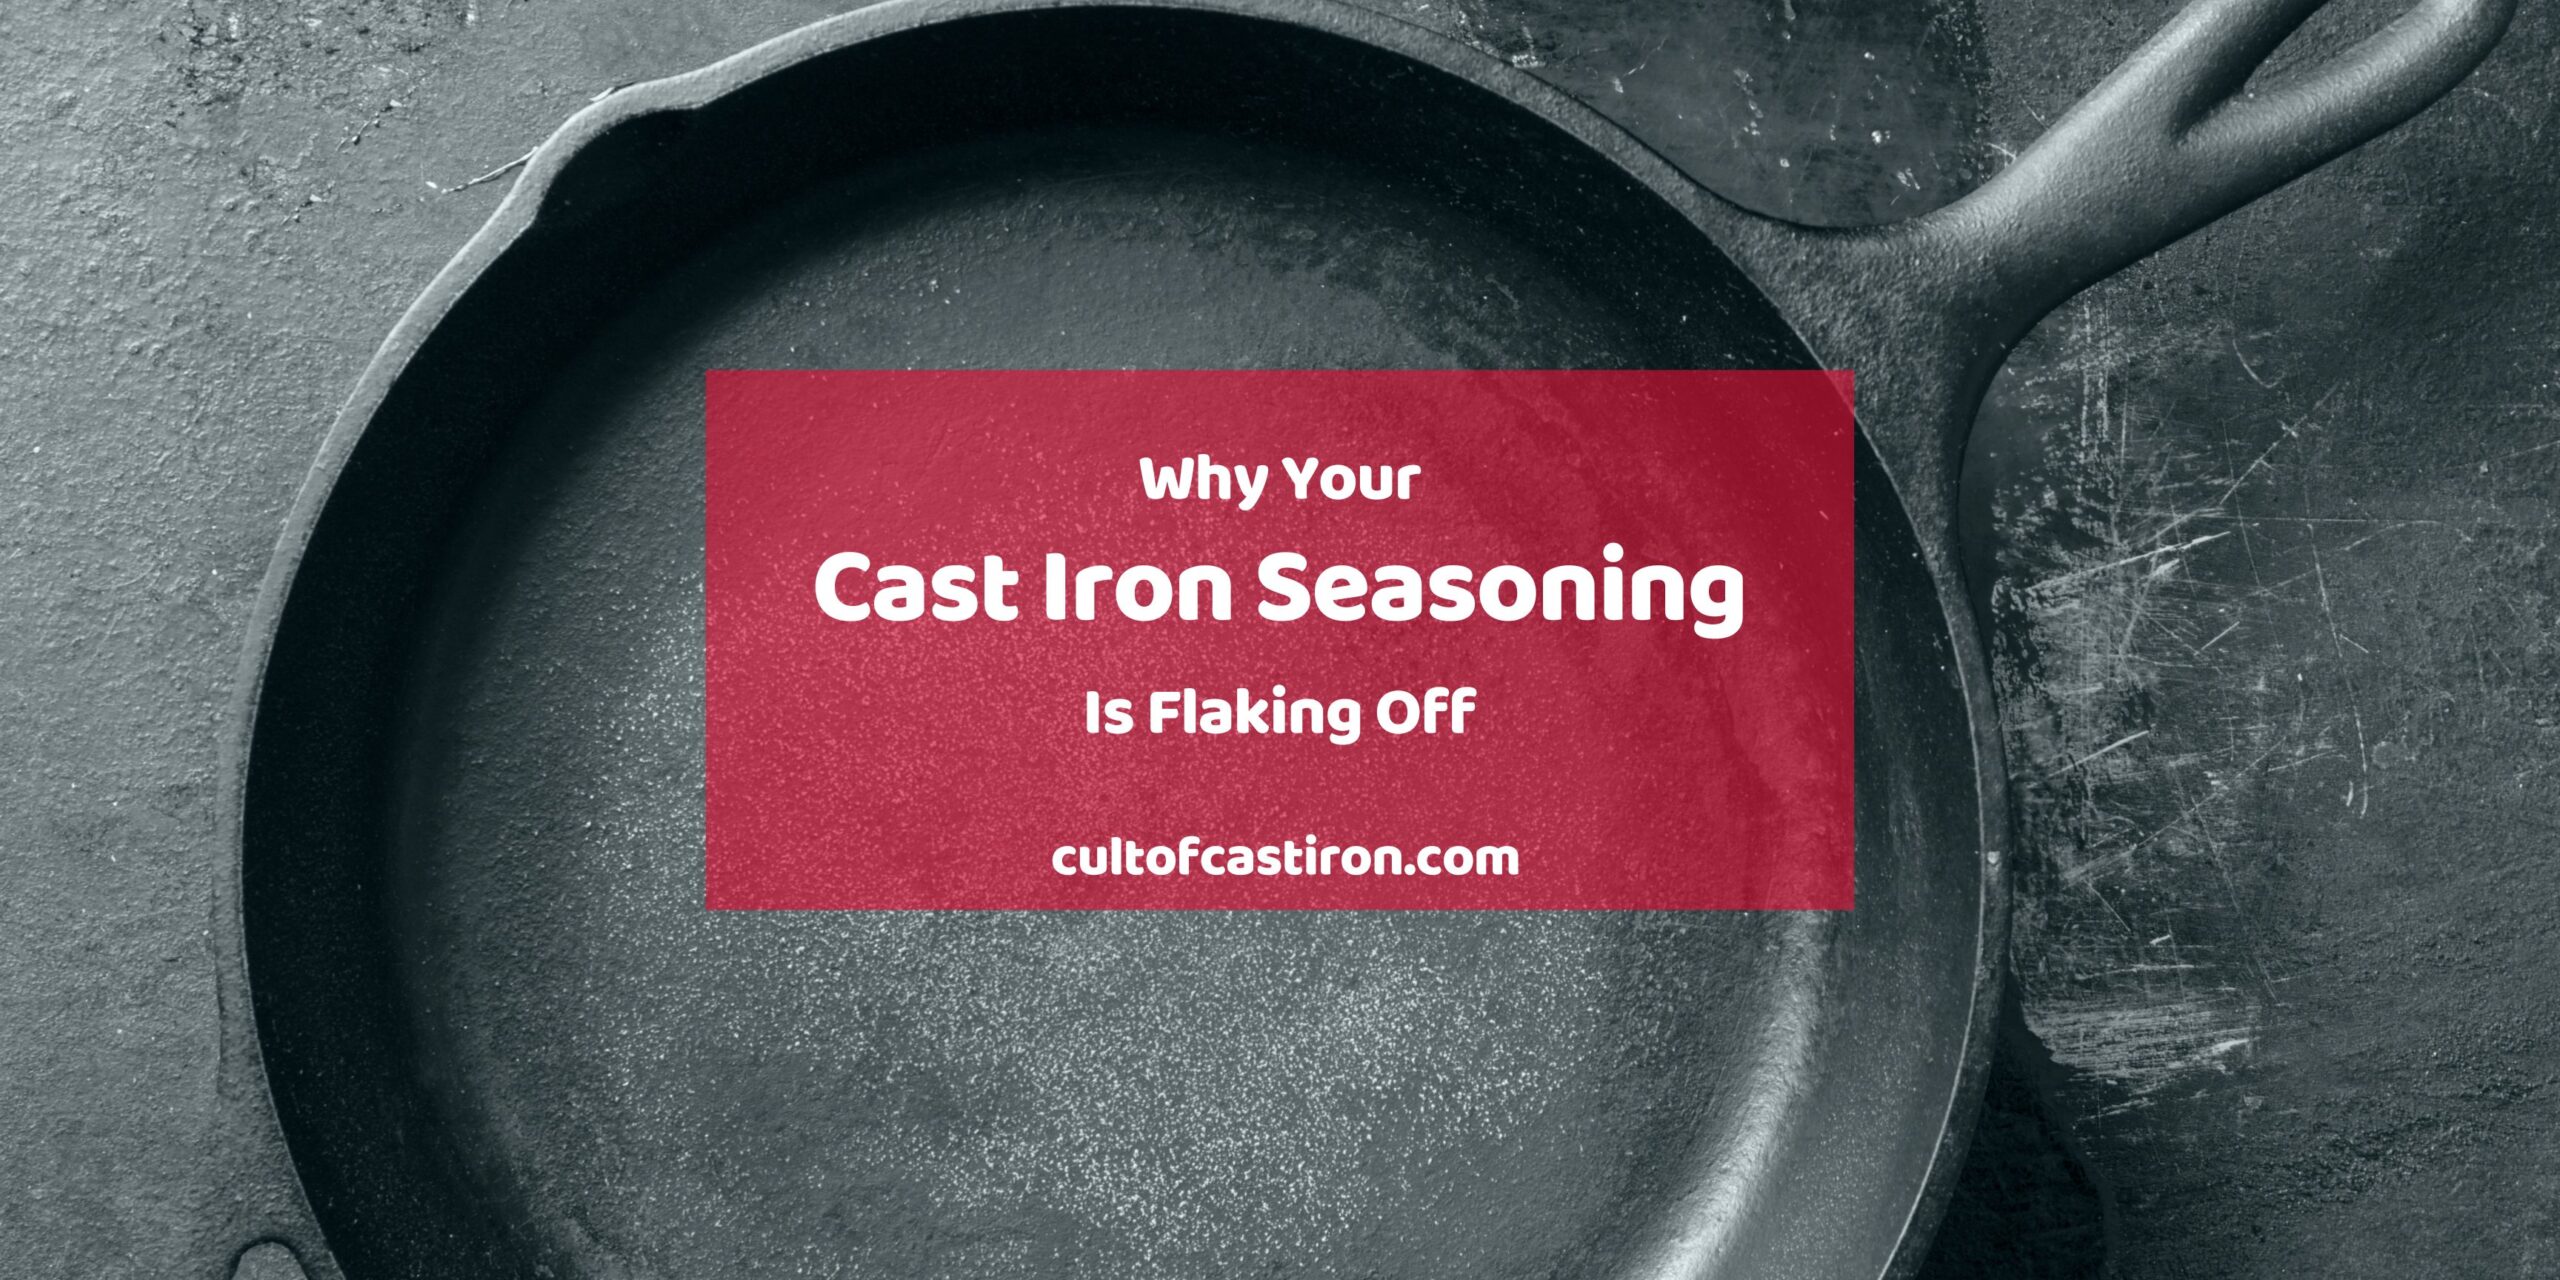 Cast Iron Skillet 101: Seasoning & Cleaning Basics